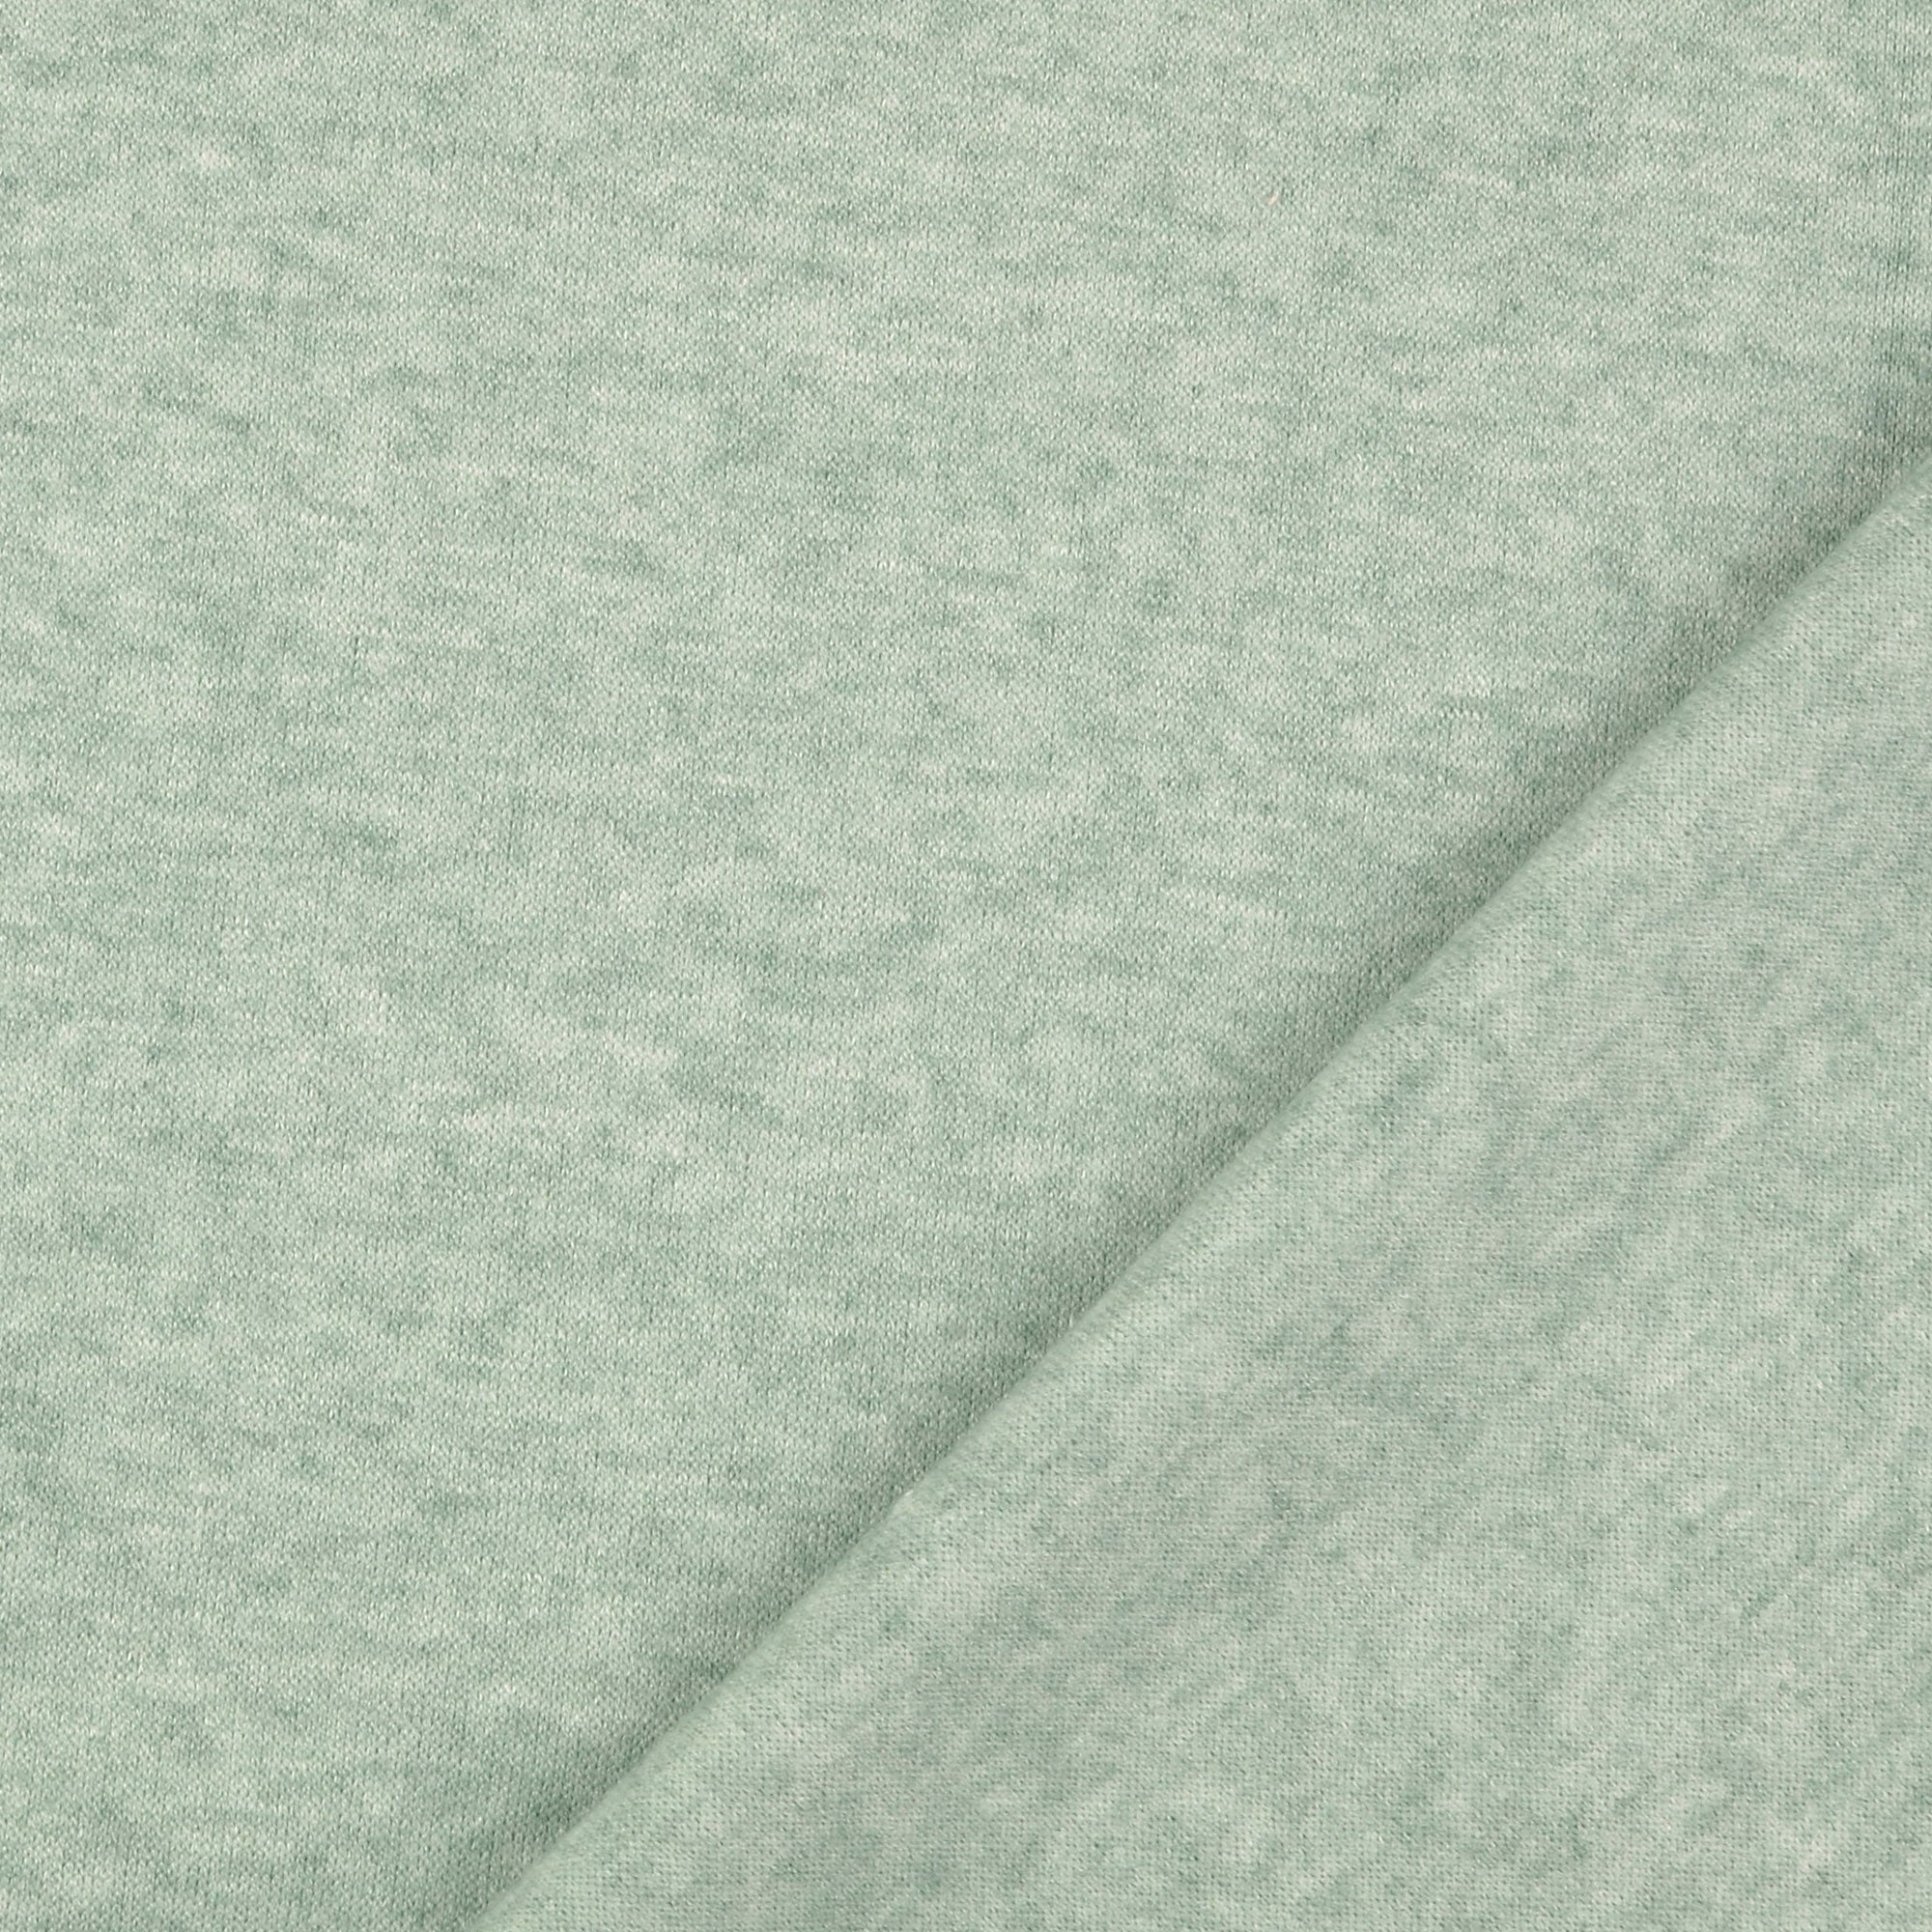 REMNANT 0.3 Metre - Snug Viscose Blend Sweater Knit in Mint Melange